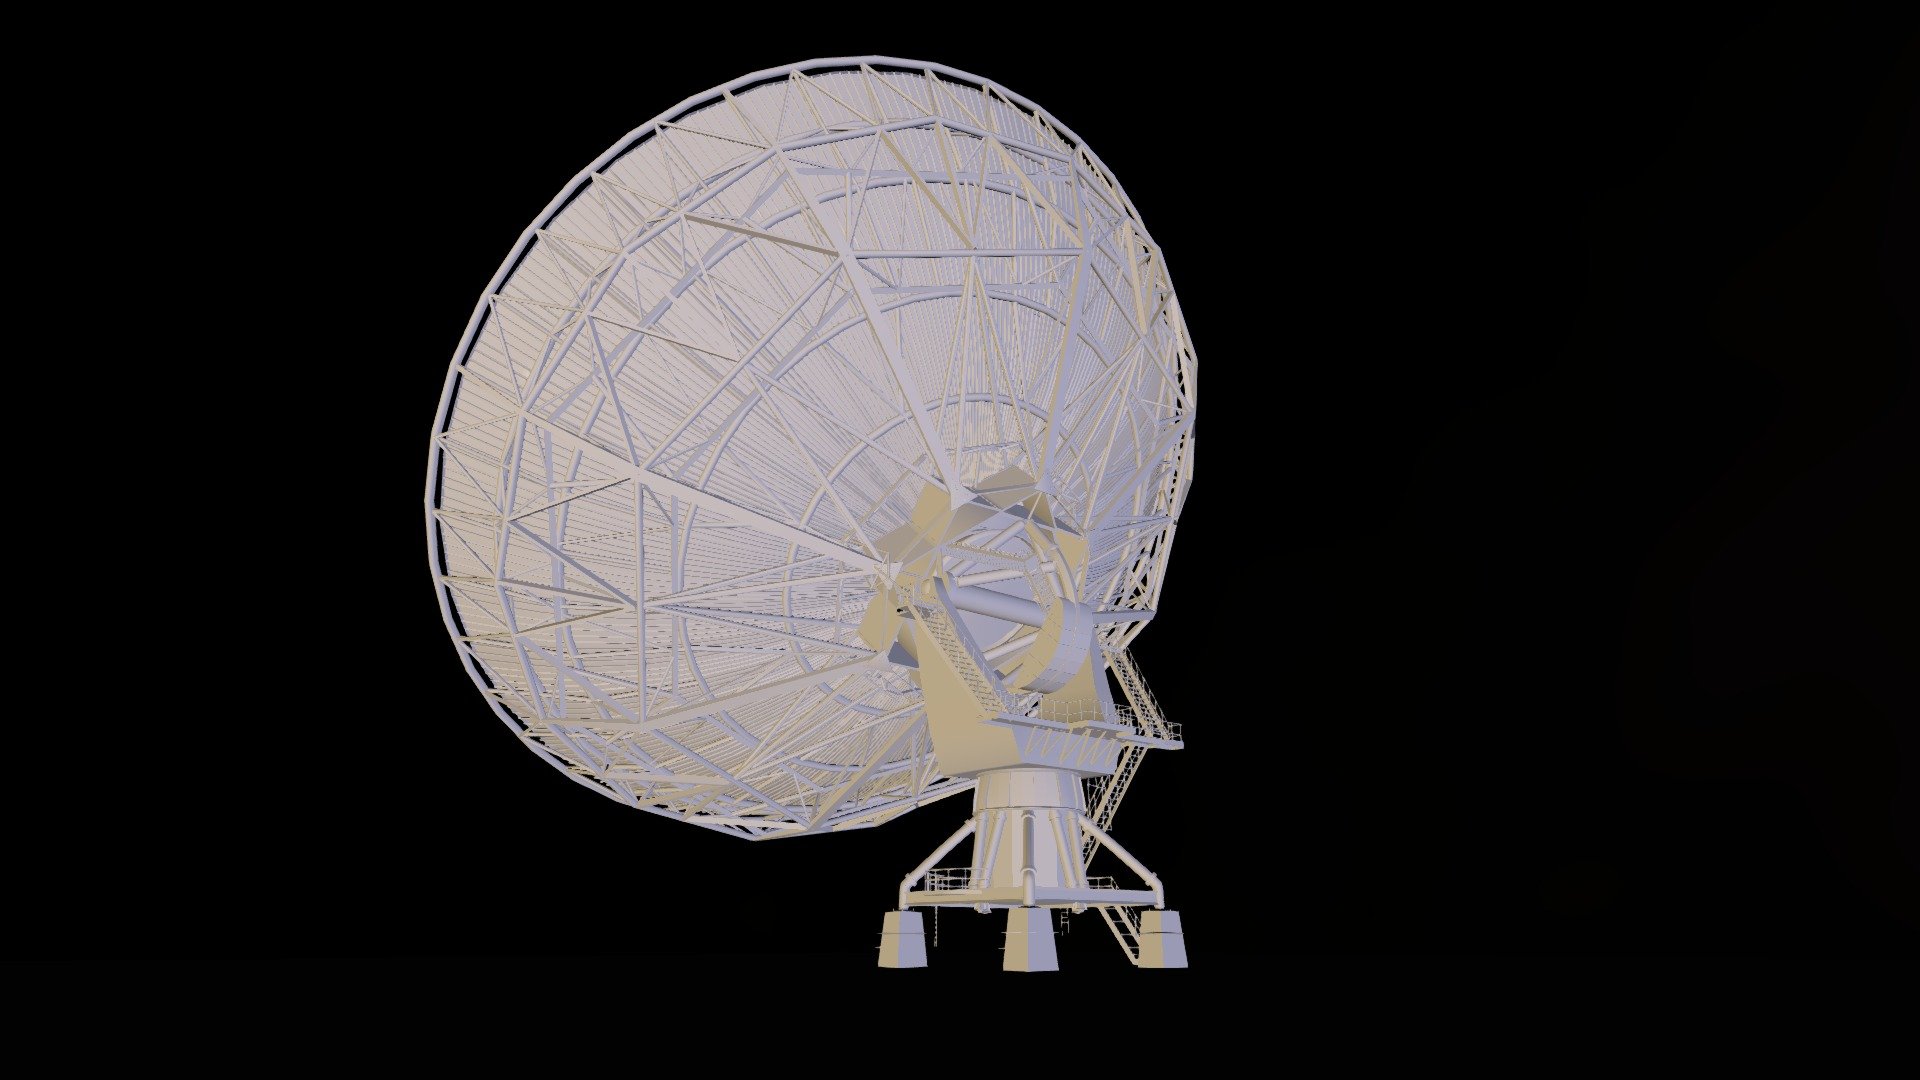 Radio Telescope model